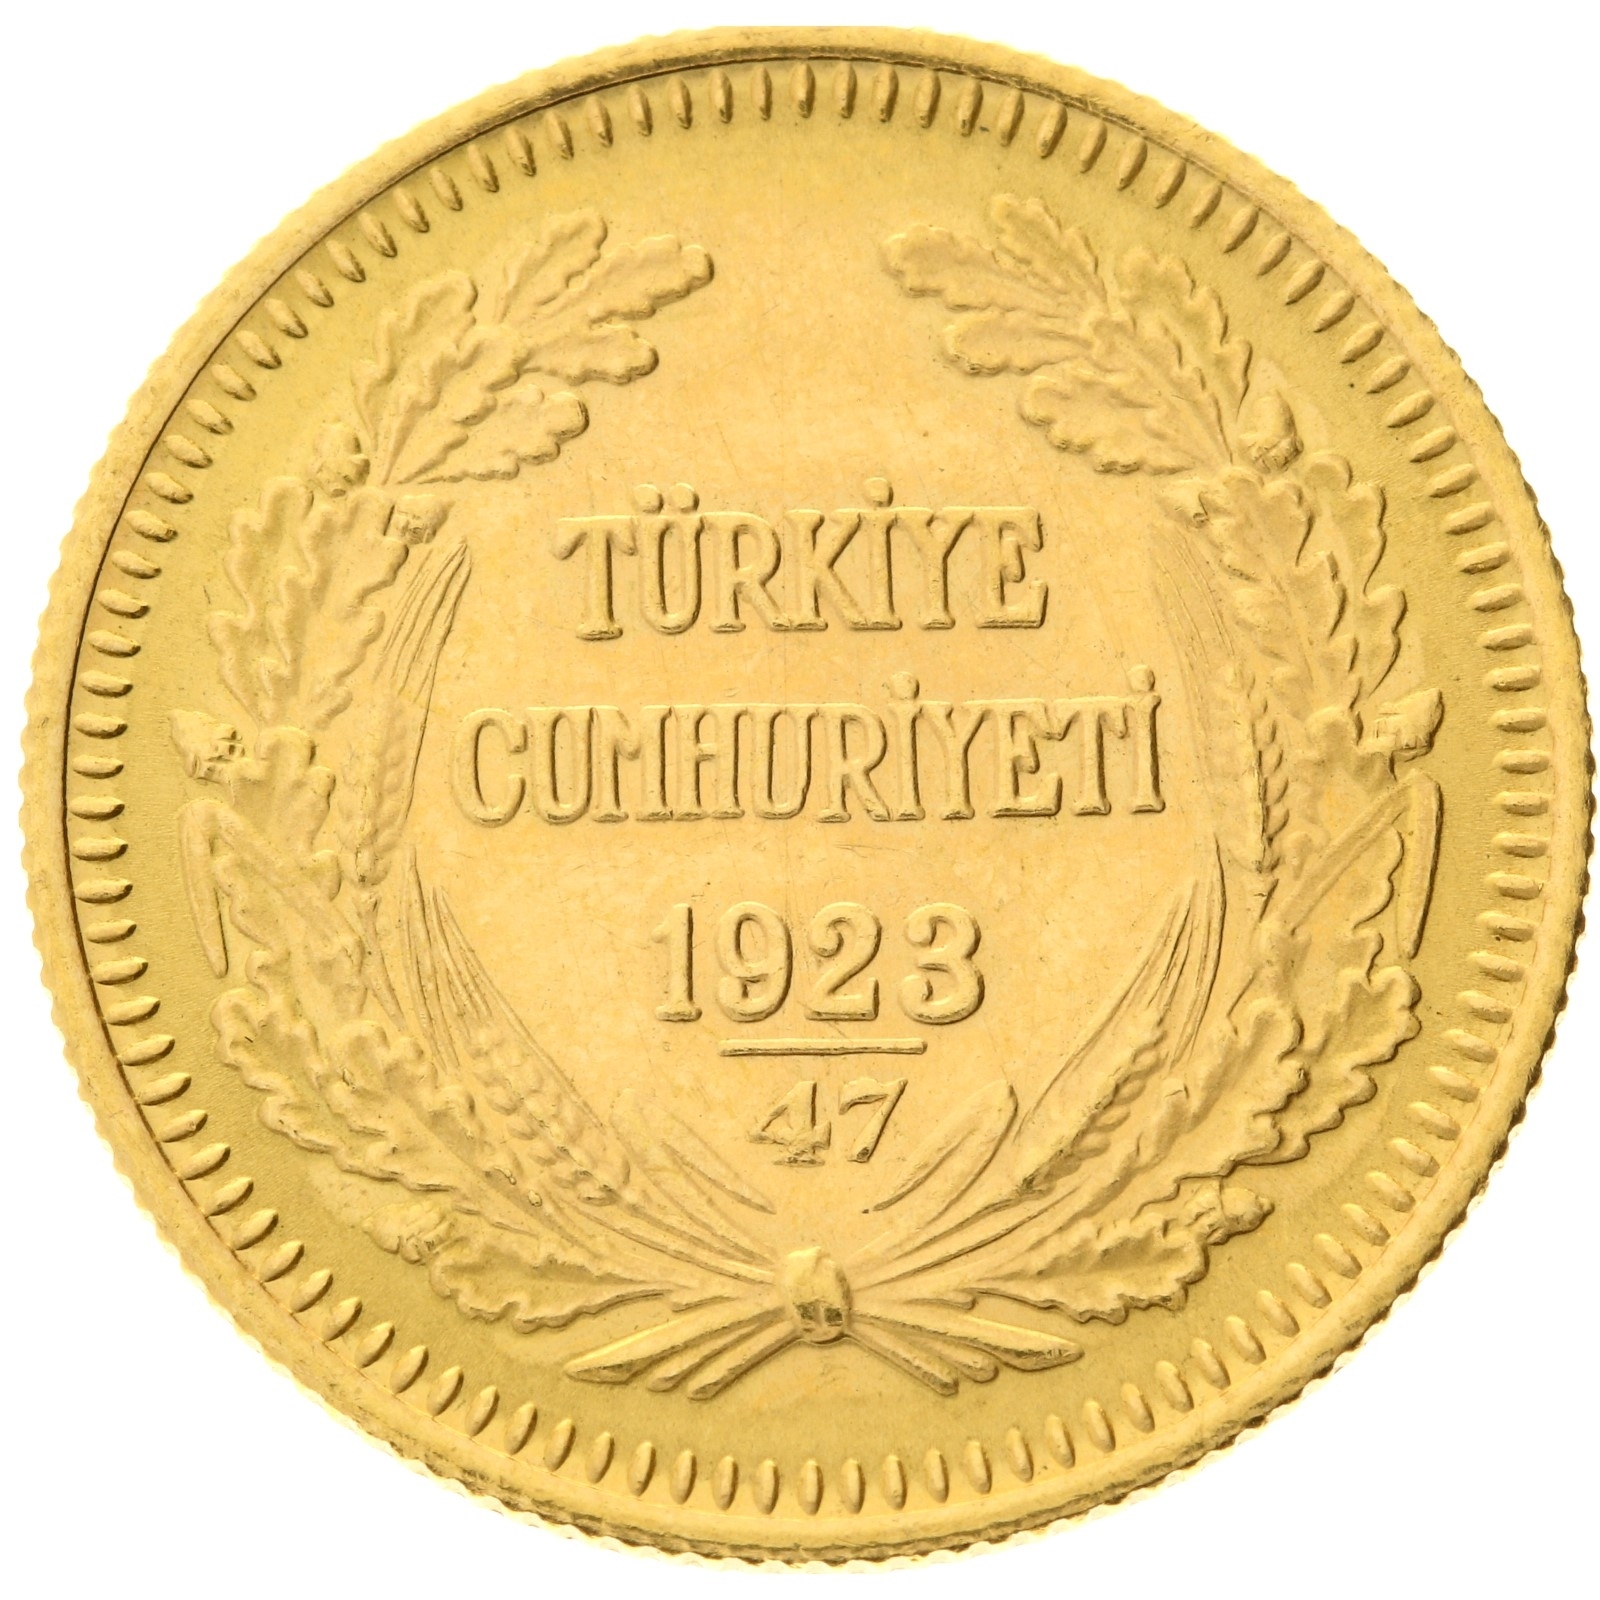 Turkey - 100 kurush 1923/47 (1969) - Kemal Ataturk 